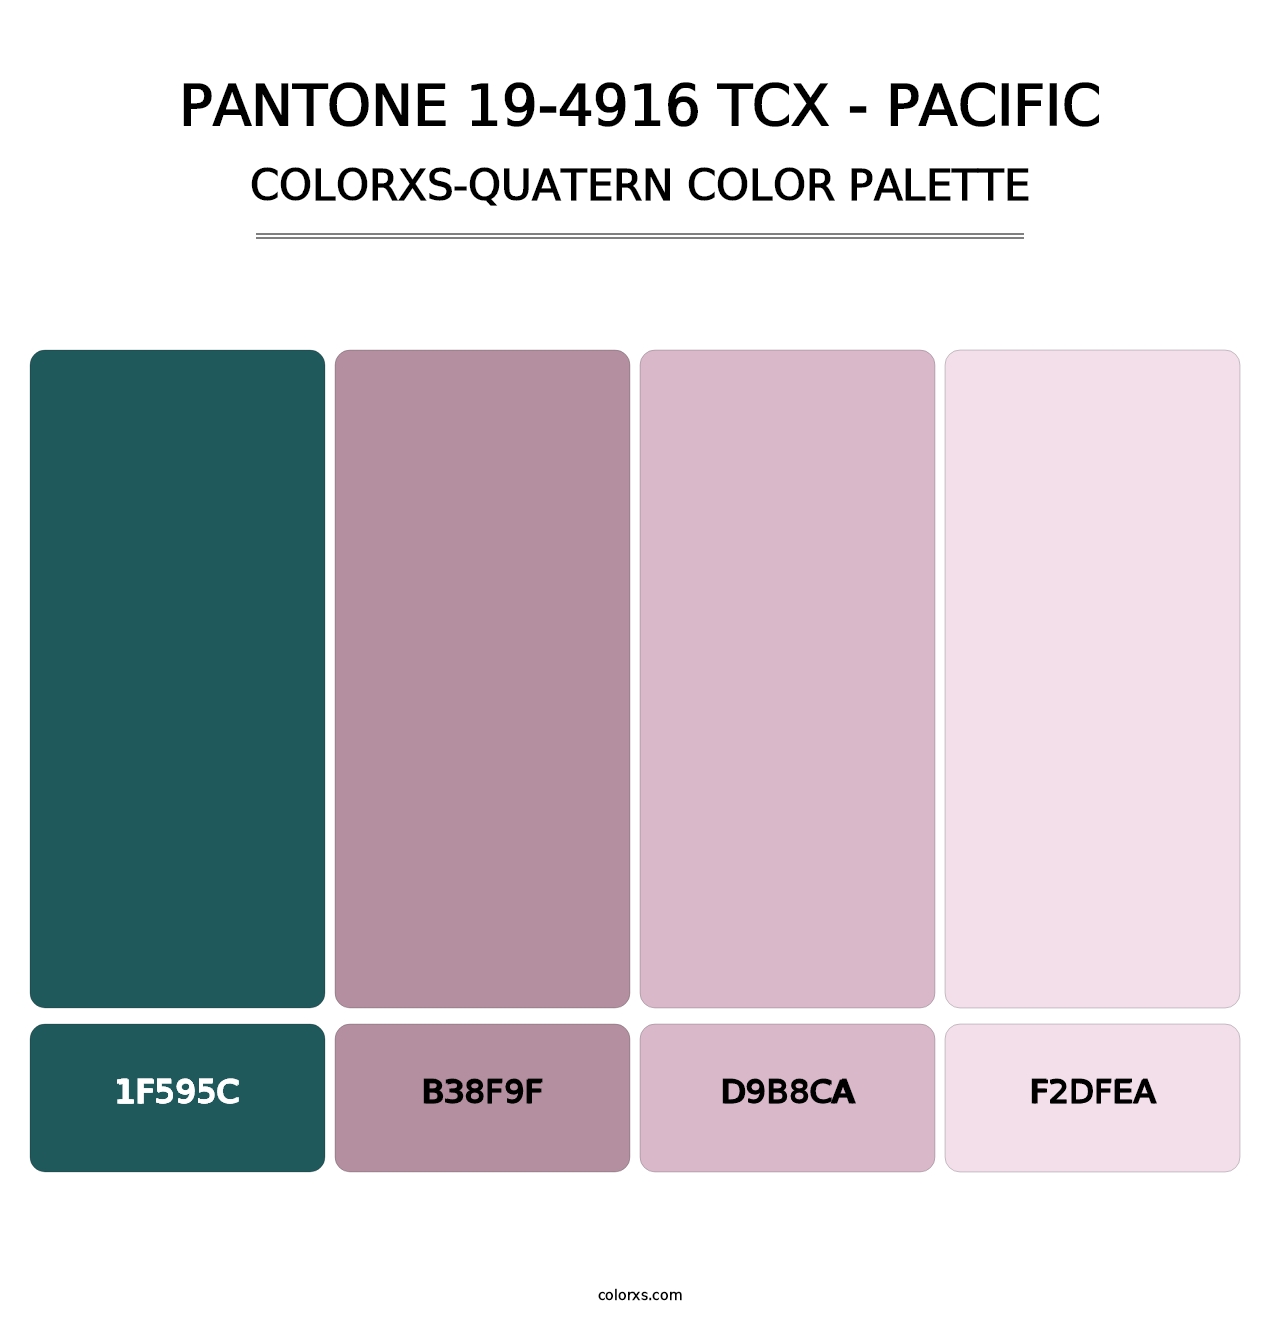 PANTONE 19-4916 TCX - Pacific - Colorxs Quatern Palette